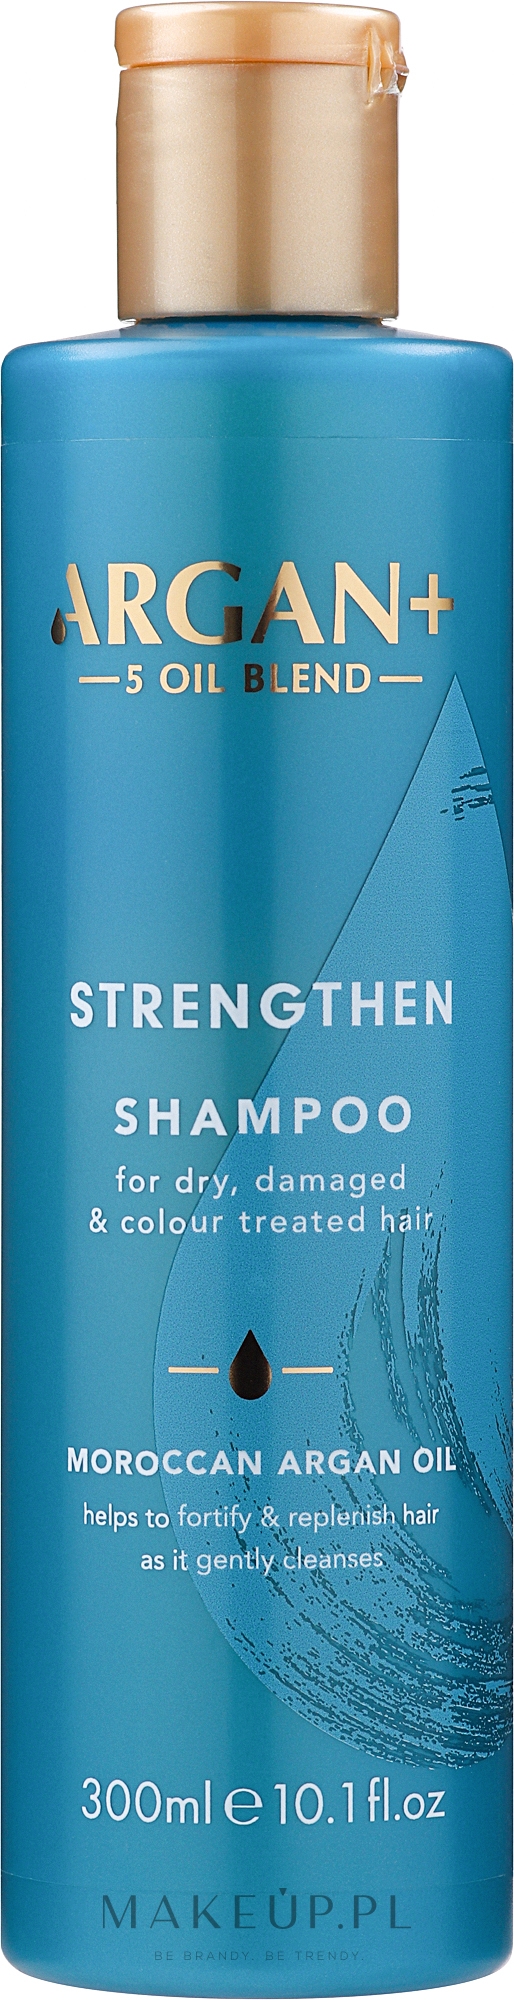 Szampon do włosów suchych, zniszczonych i farbowanych - Argan+ Strengthen Shampoo Moroccan Argan Oil — Zdjęcie 300 ml